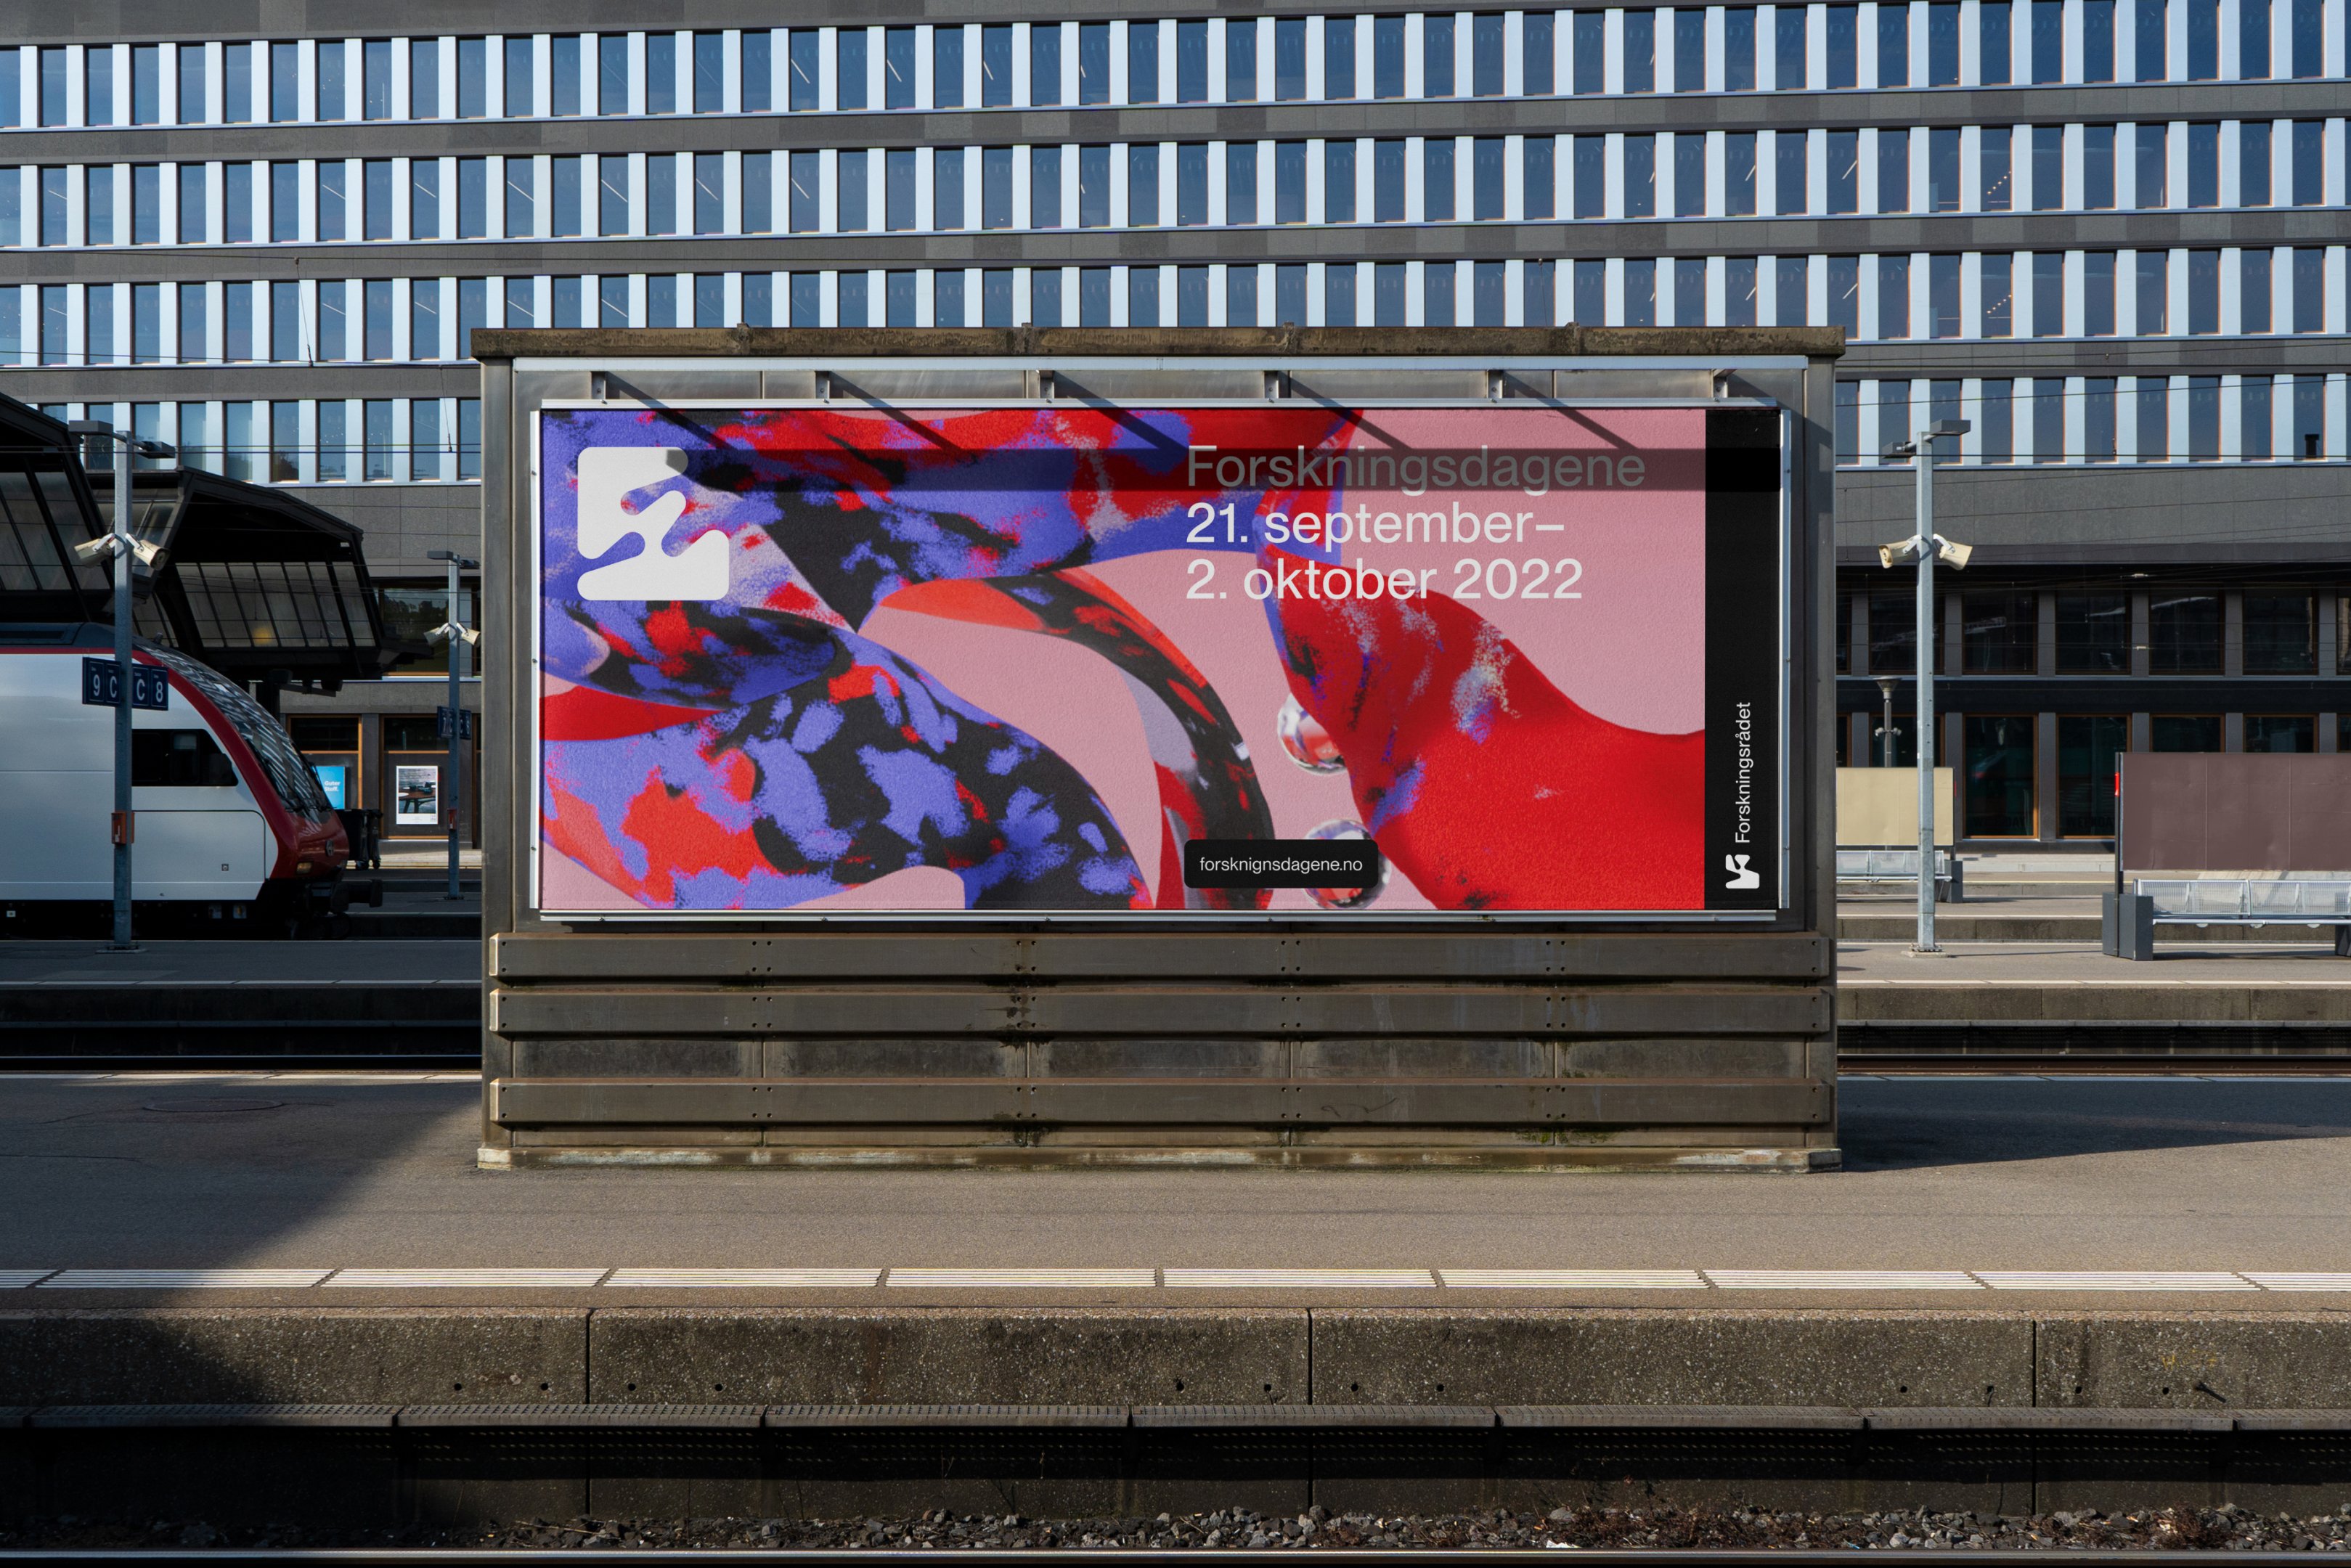 Merkidentiteit en billboard posterontwerp door ANTI voor The Norwegian Research Council